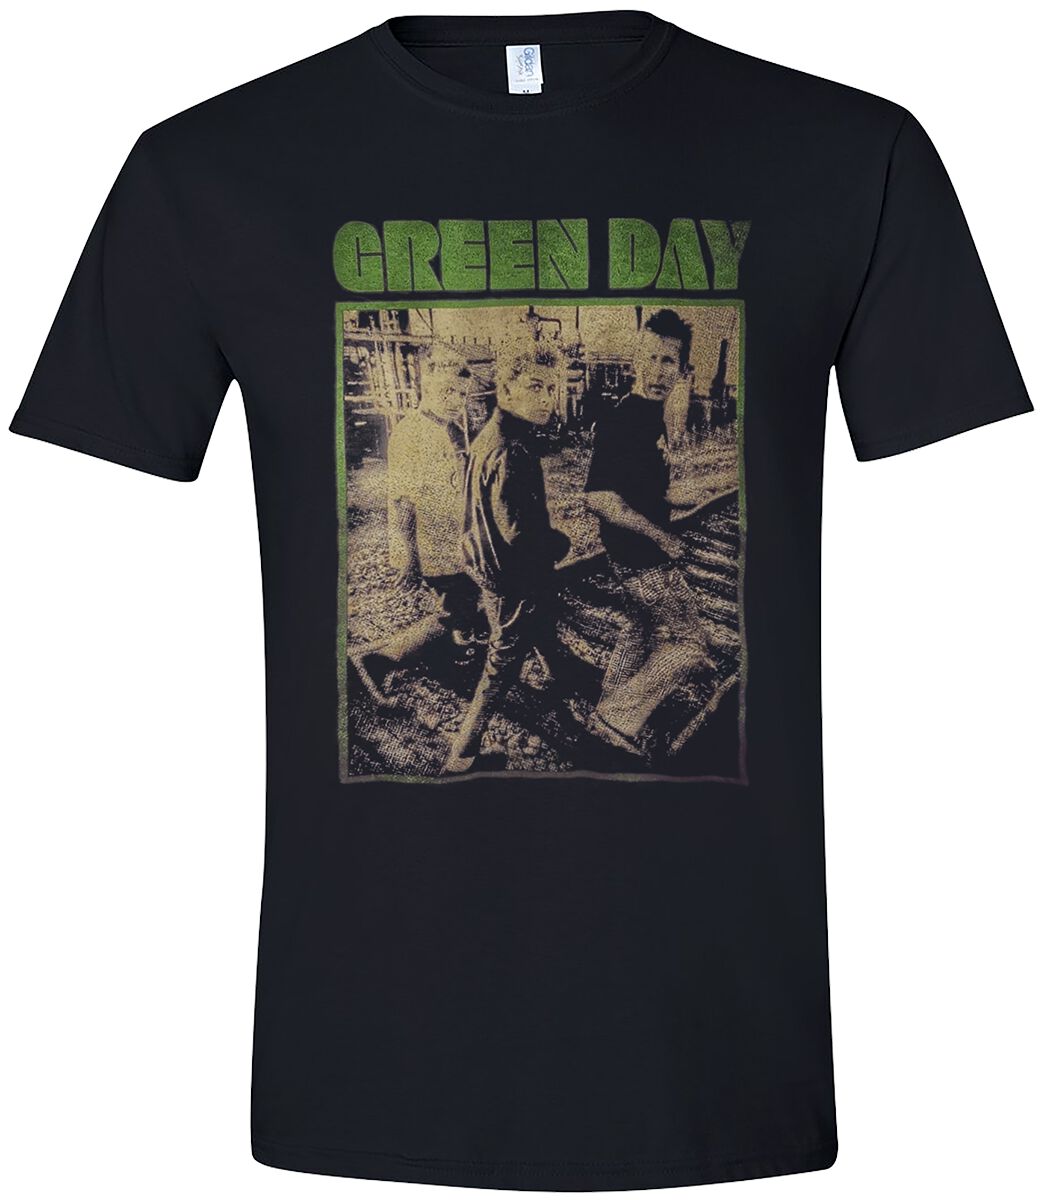 Green Day T-Shirt - Train Tracks Revolution - S bis XL - für Männer - Größe S - schwarz  - Lizenziertes Merchandise!